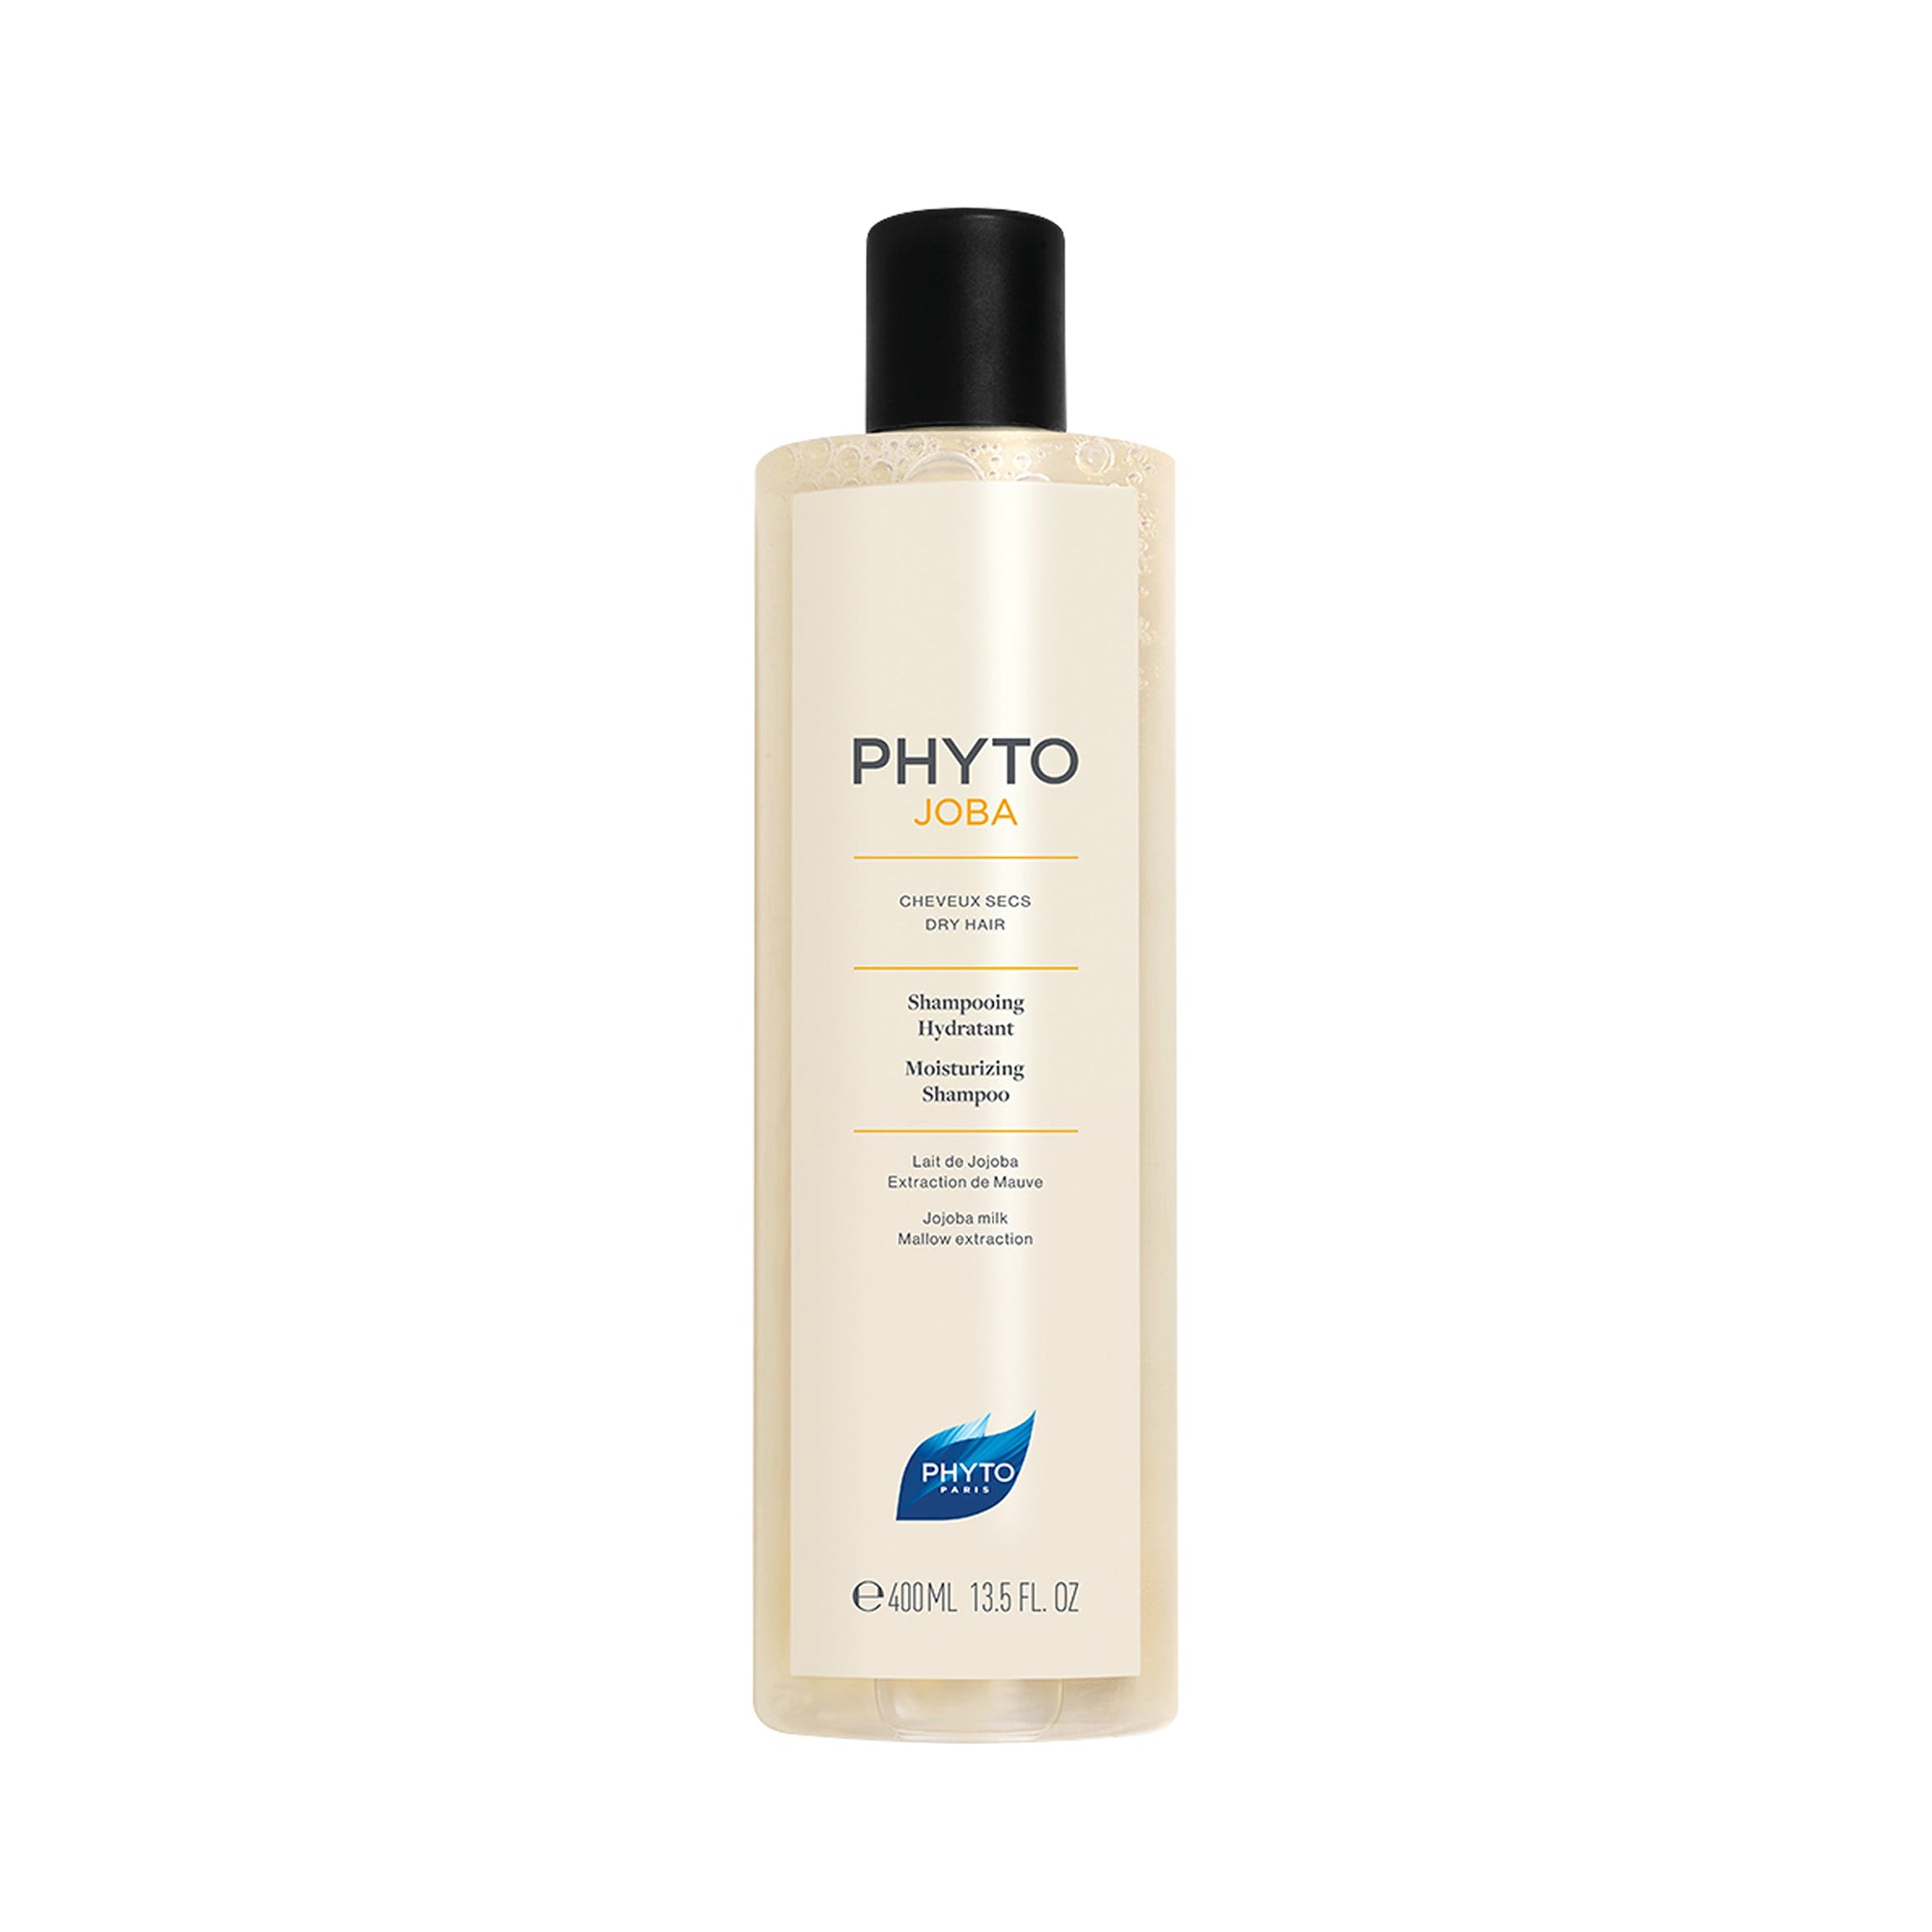 Phyto Phytojoba Dry Hair Moisturizing Shampoo / 13.5 OZ